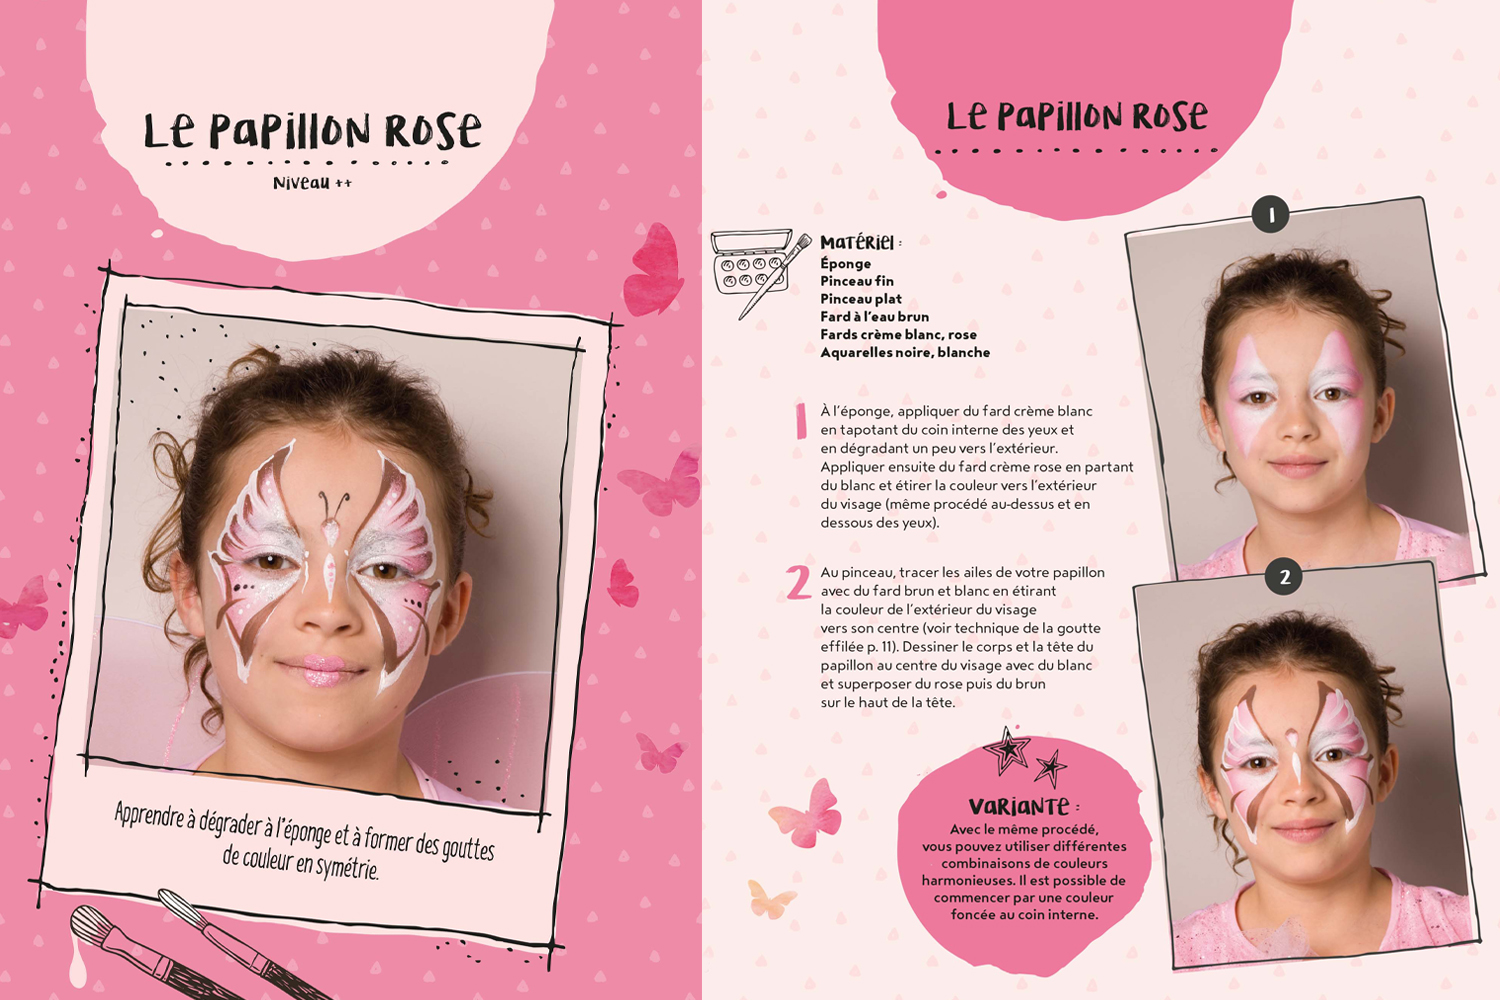 Maquillage anniversaire :Maquillages pour enfants - Les conseils pour  maquiller vos enfants